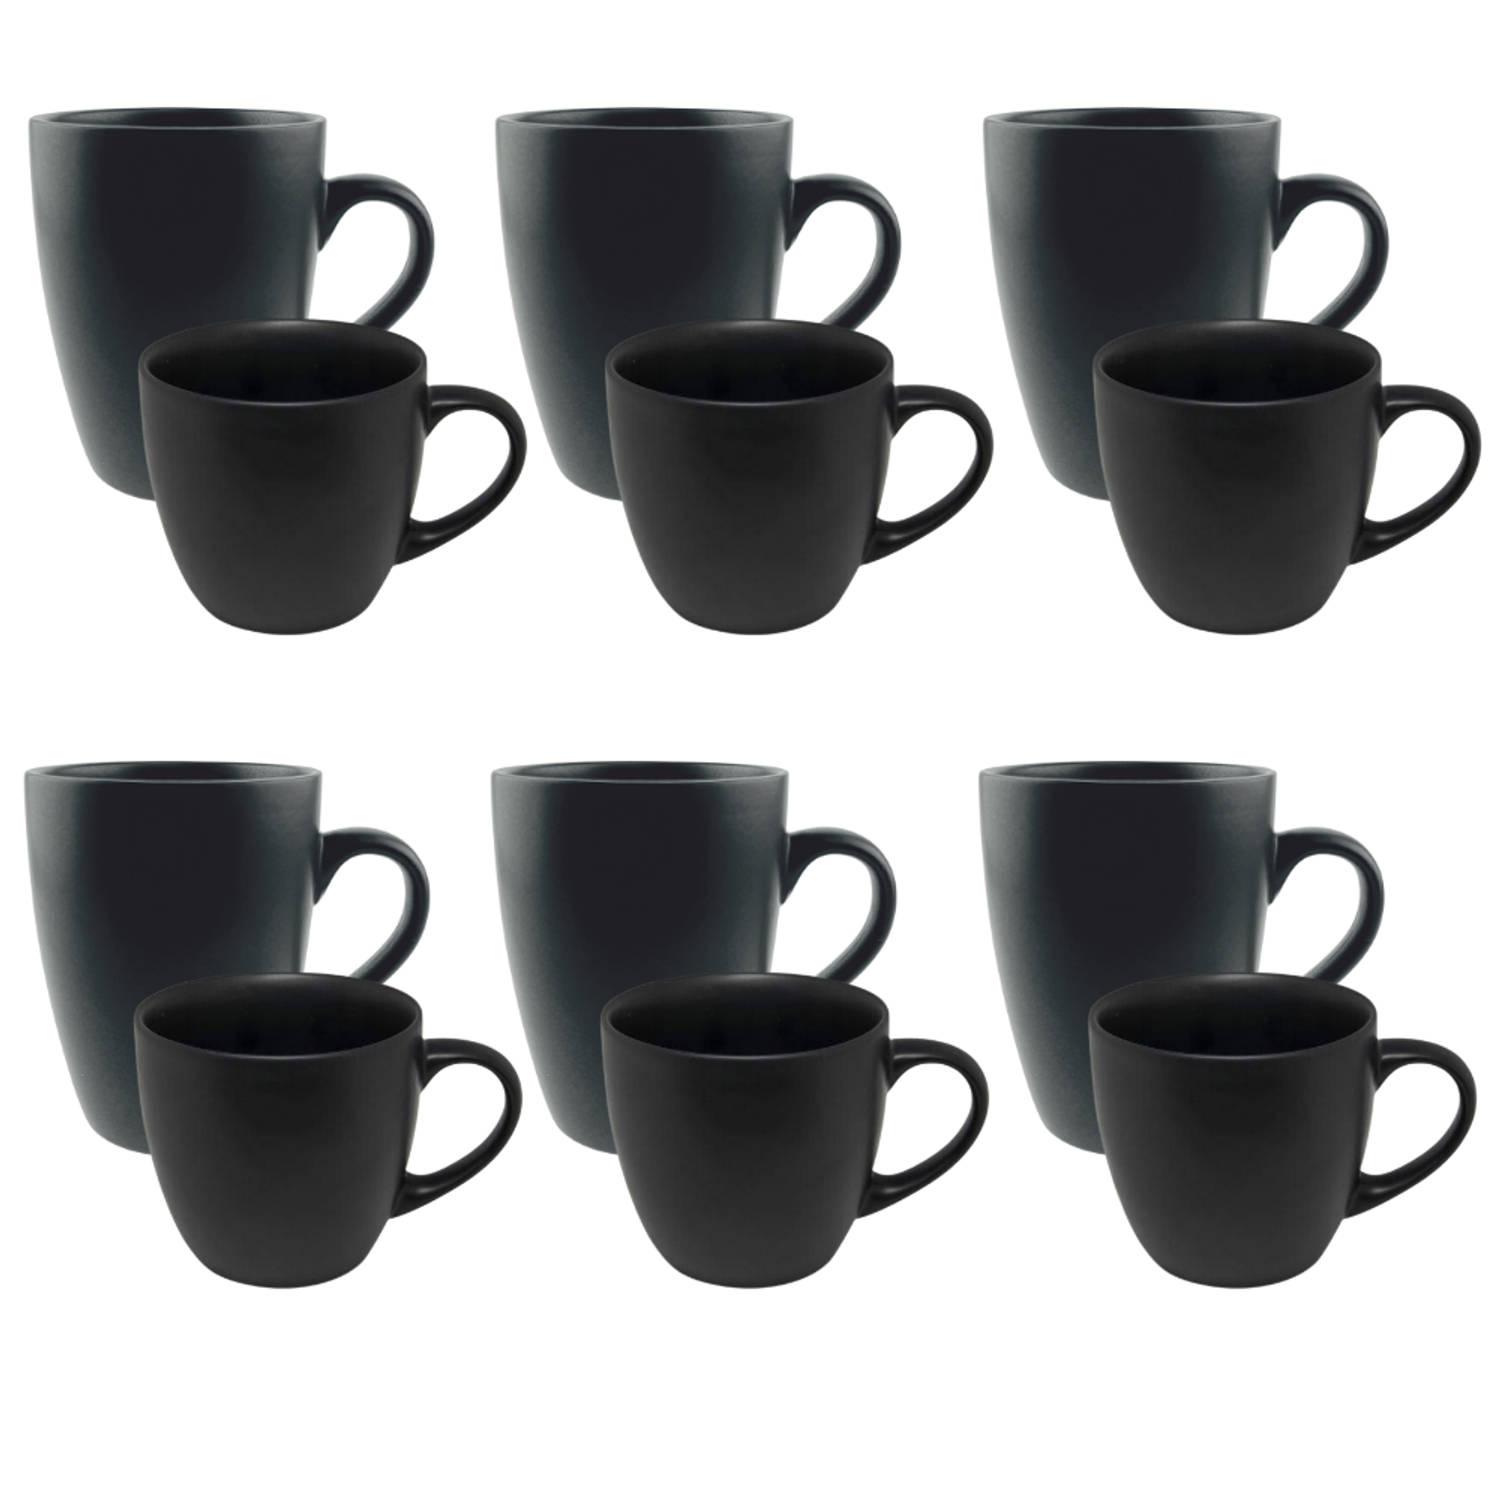 OTIX Koffiekopjes met oor Cappuccino Koffietassen Kopjes Set van 12 stuks 6x Koffiekopje 6x Cappuccino Kopjes Zwart A...